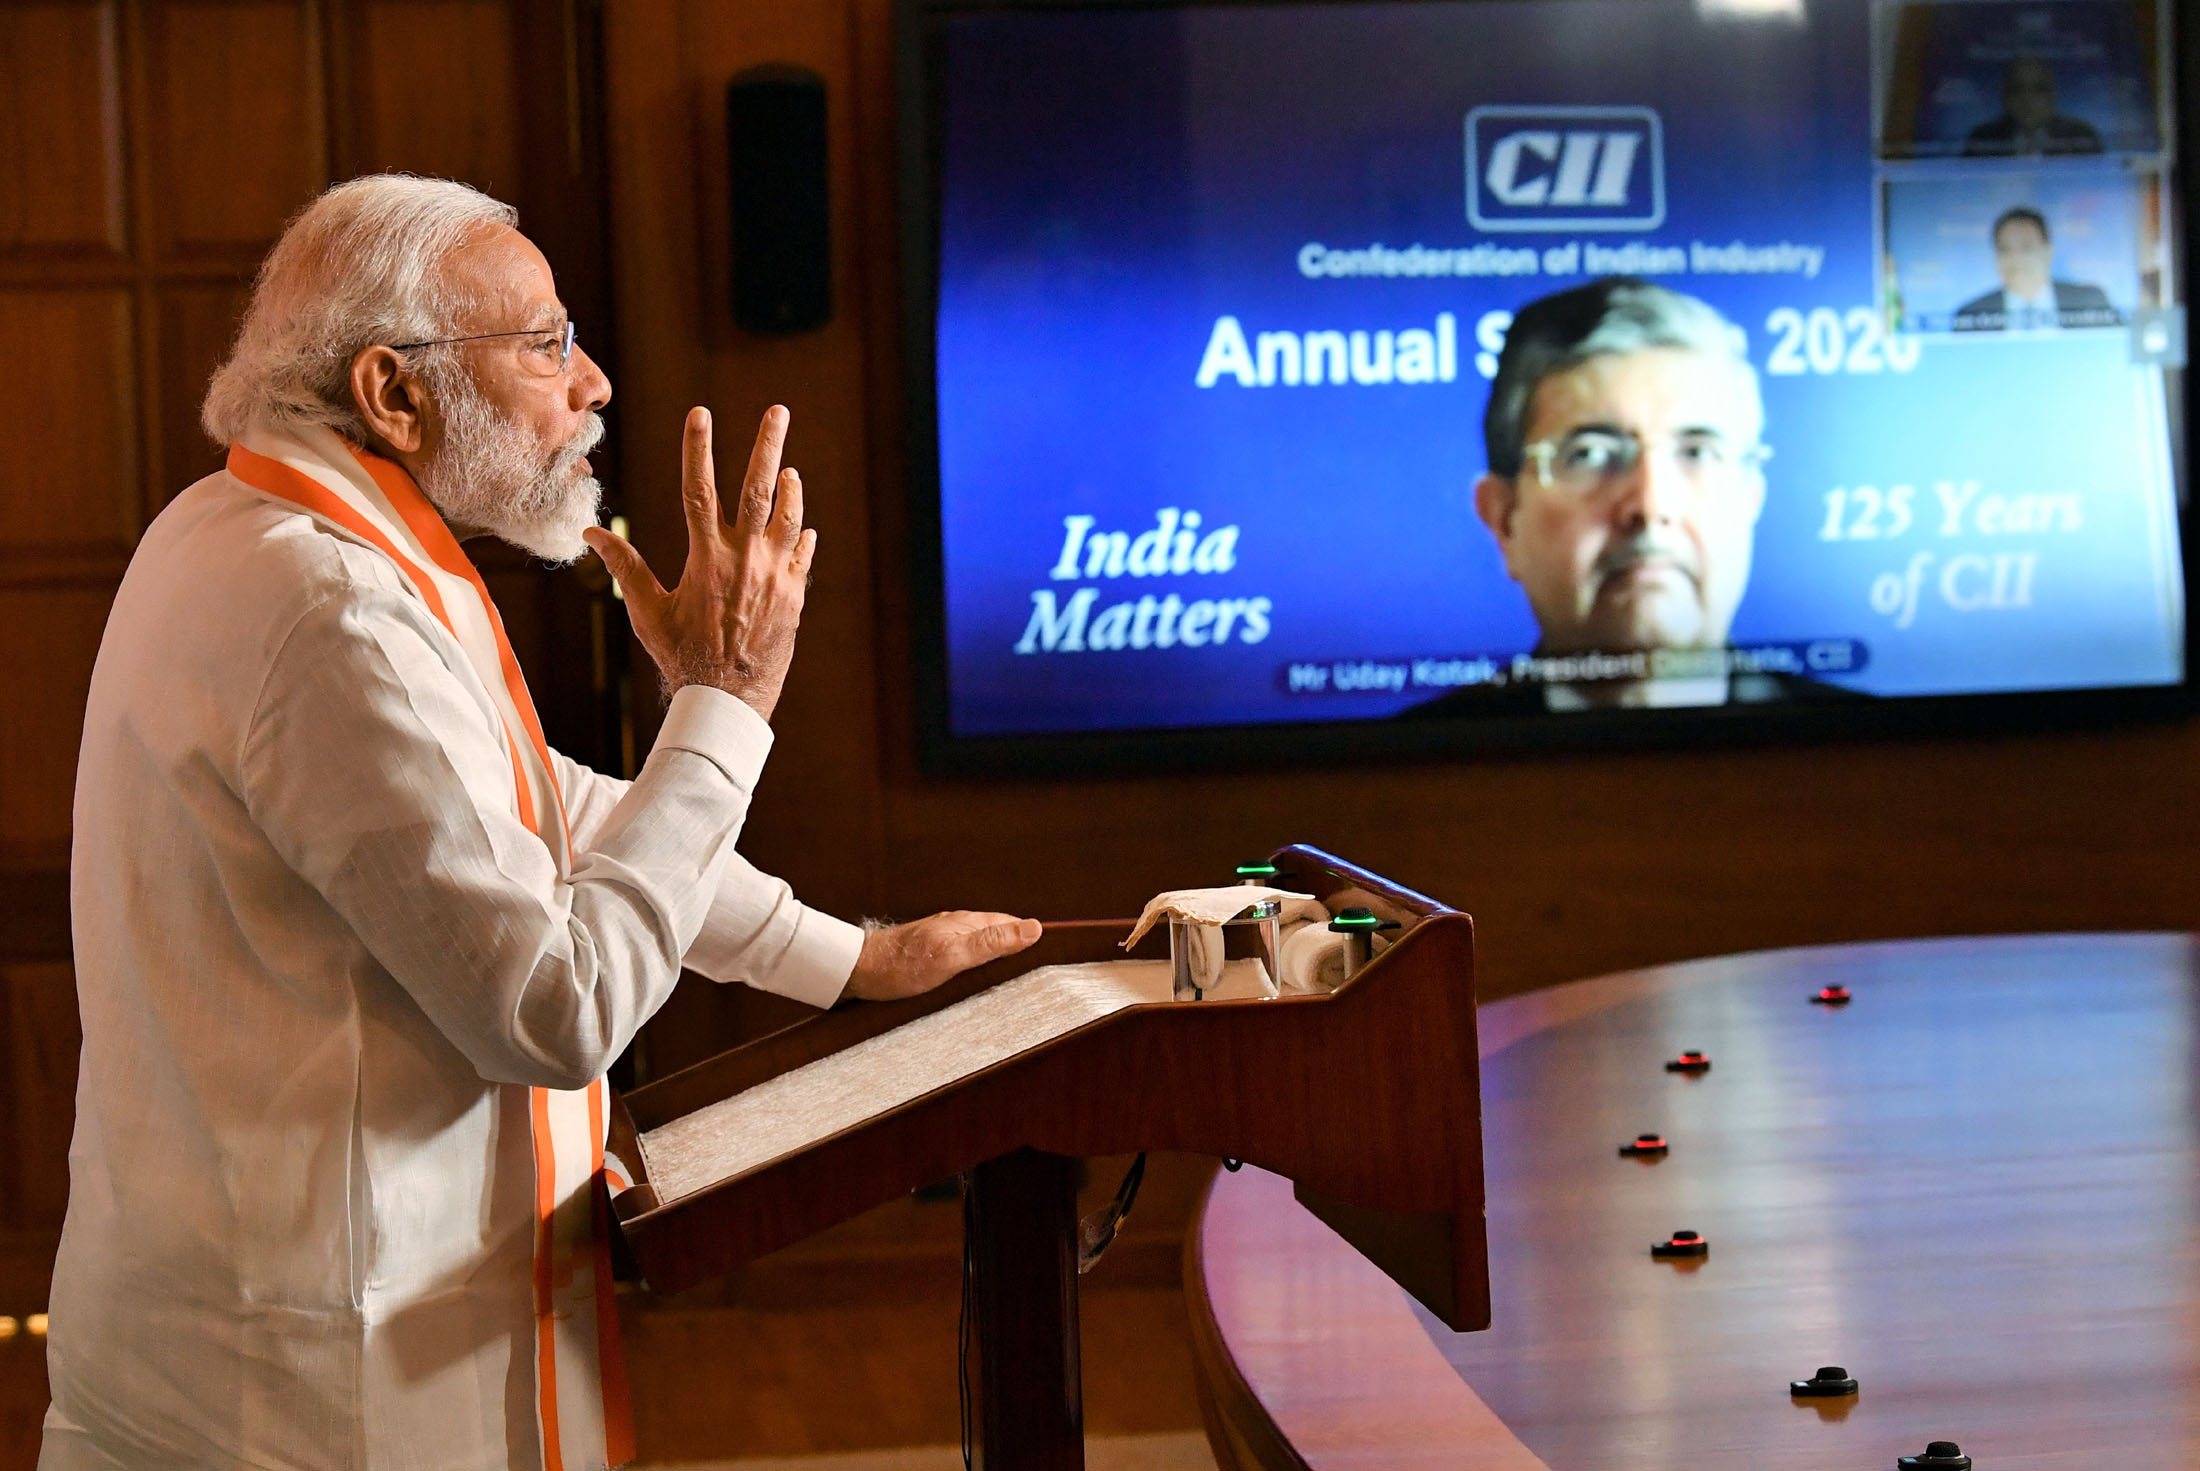 The Prime Minister, Shri Narendra Modi addressing the CII Annual Session - 2020 via video conferencing, in New Delhi on June 02, 2020.